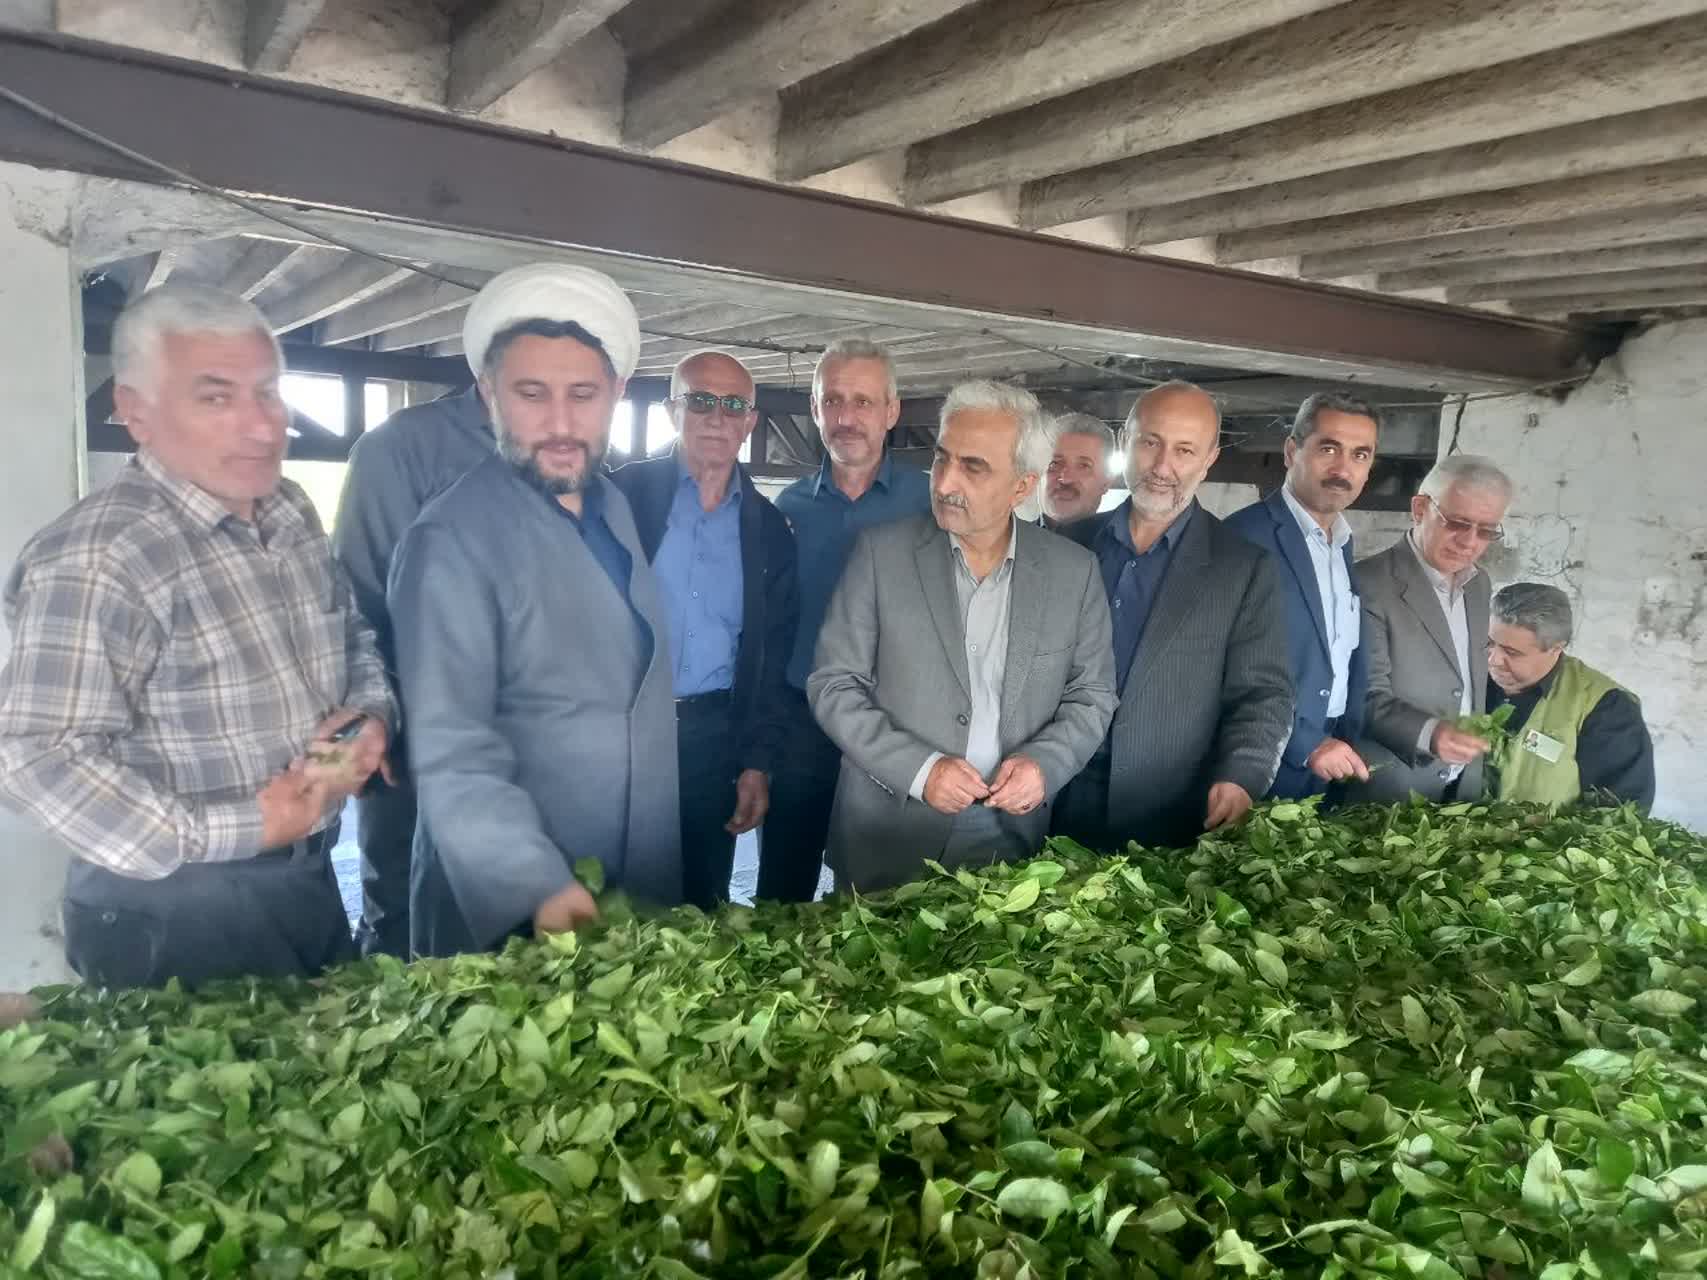 بازدید رئیس سازمان چای کشور به همراه استاندار محترم و نمایندگان شهرستانهای چایخیز از کارخانجات چایسازی